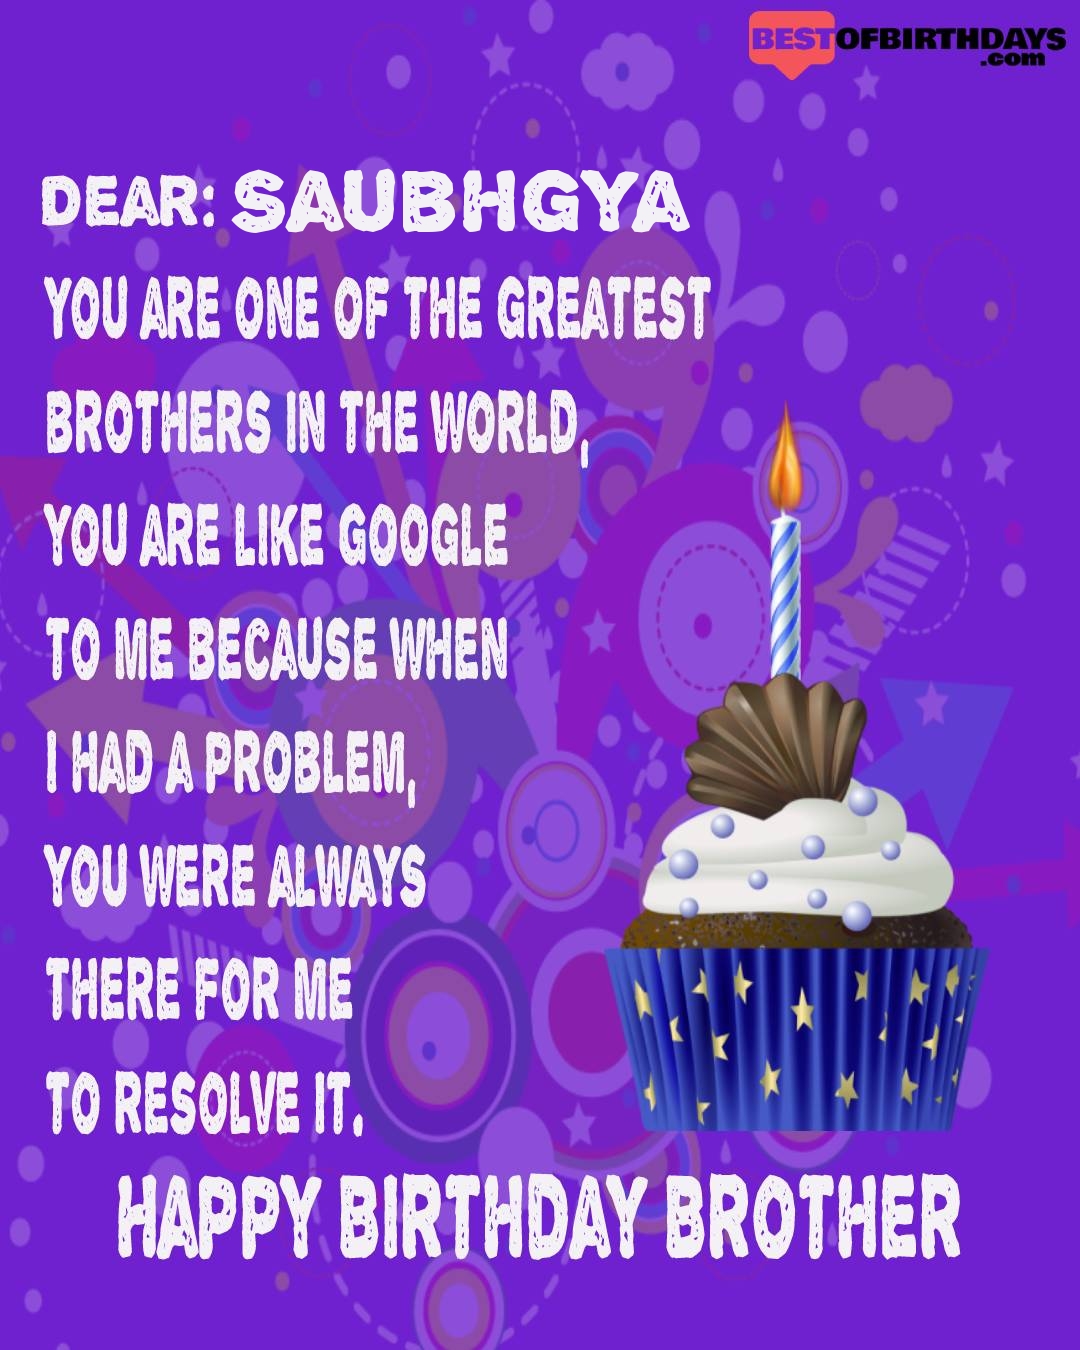 Happy birthday saubhgya bhai brother bro